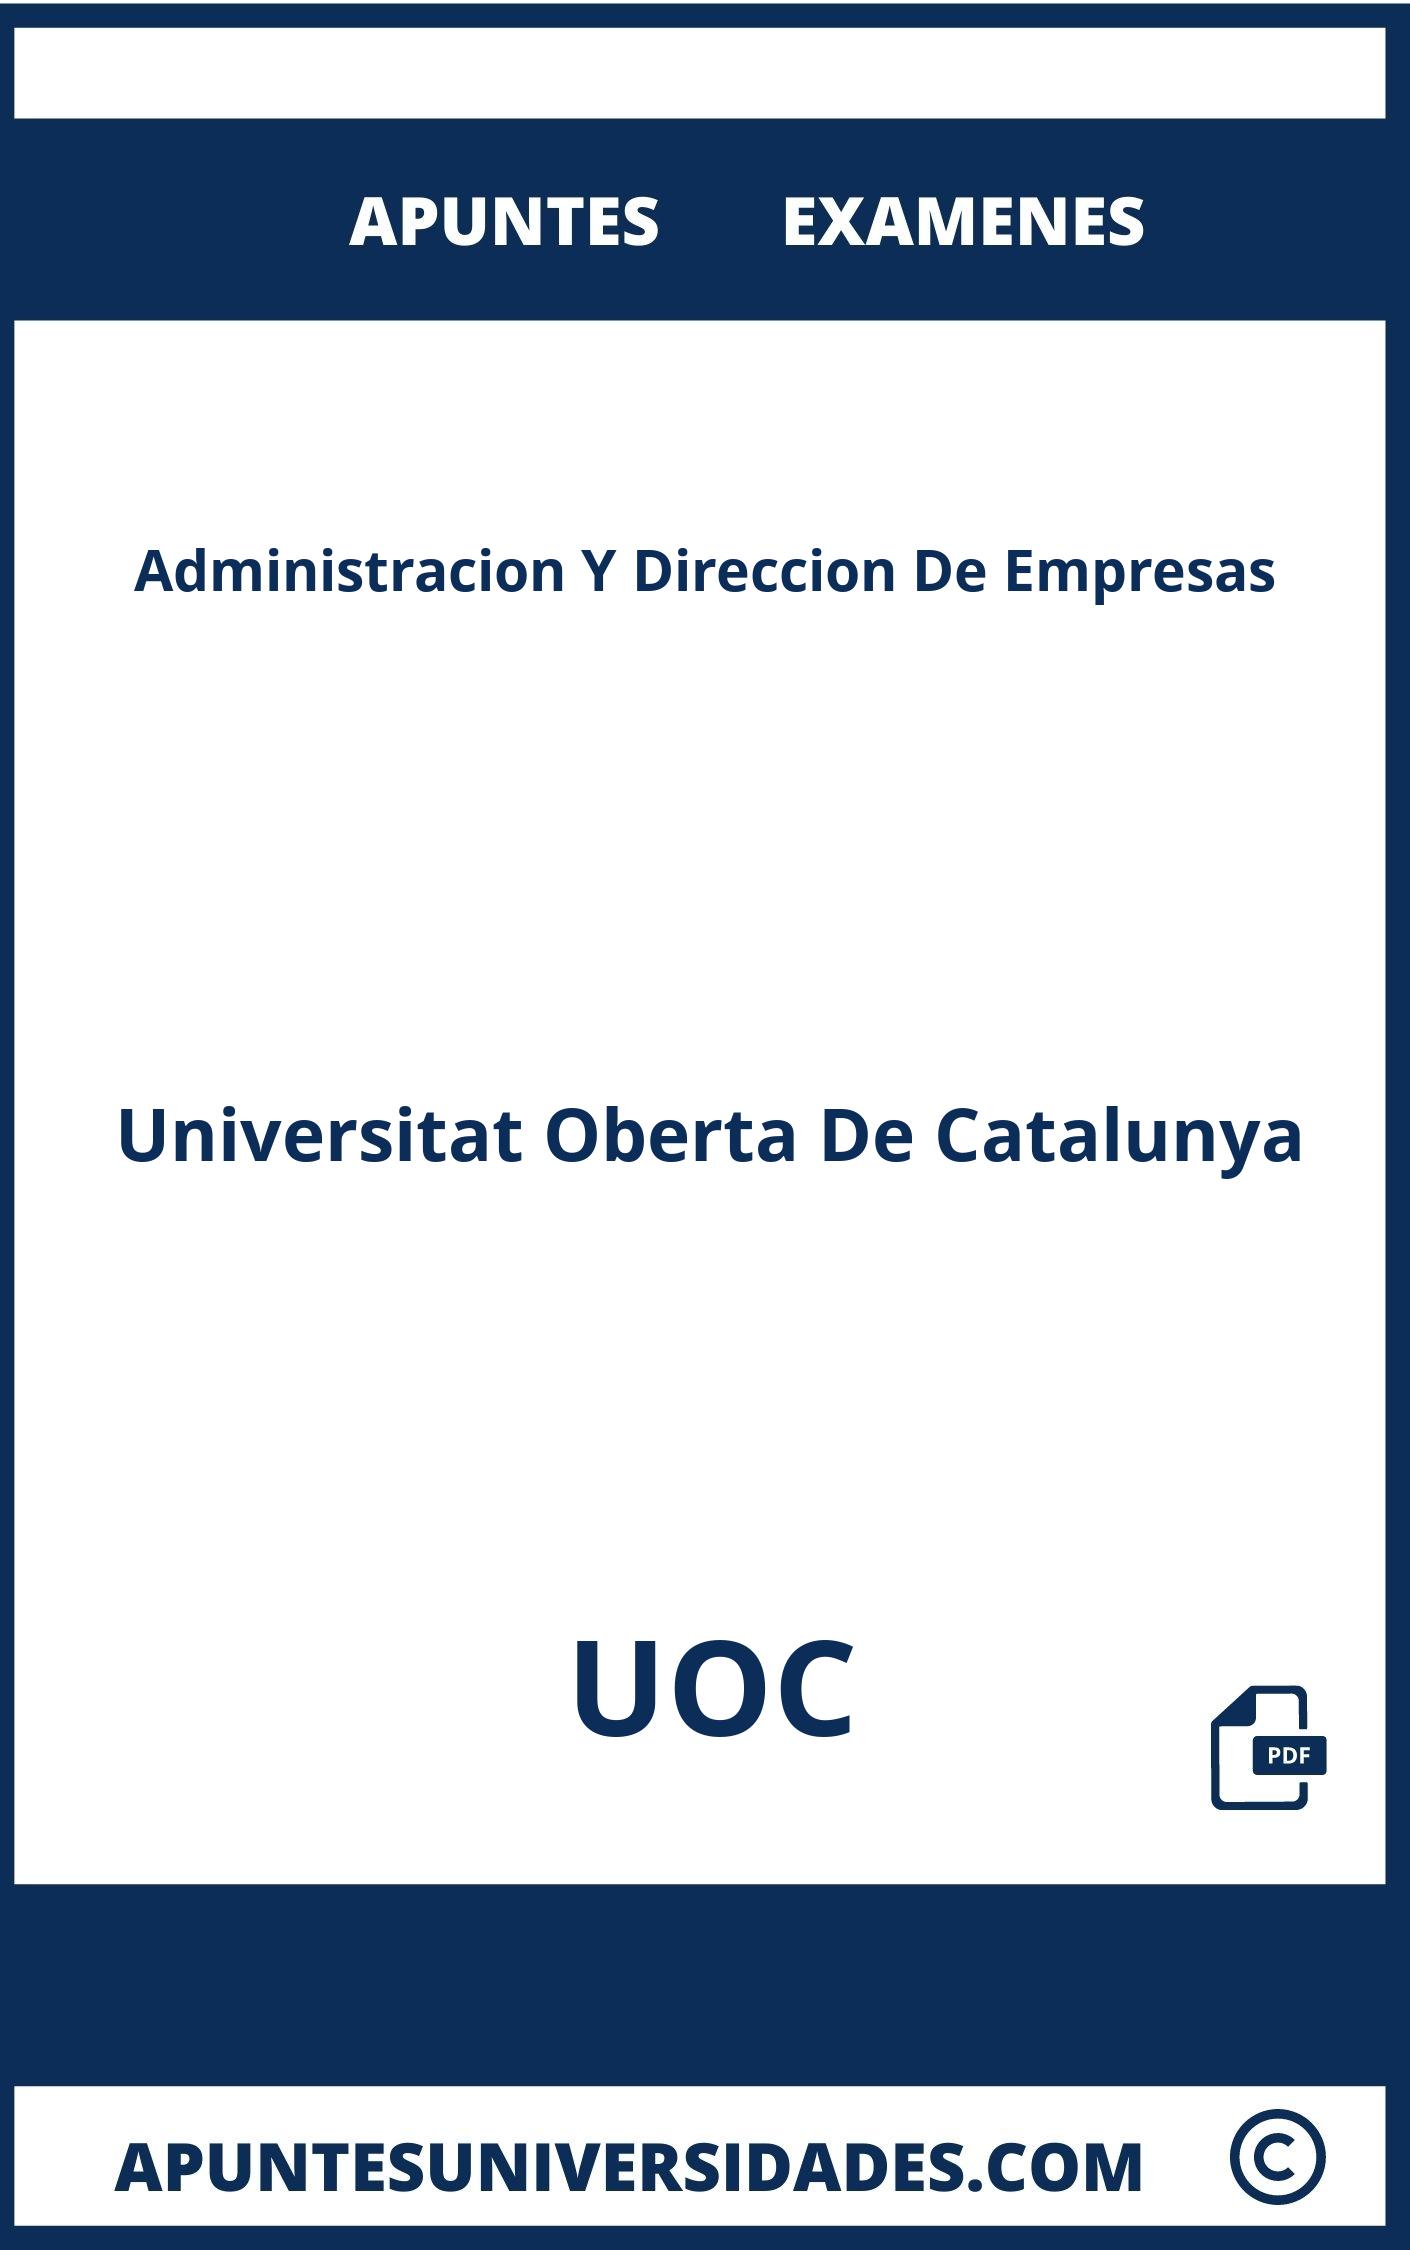 Administracion Y Direccion De Empresas UOC Apuntes Examenes